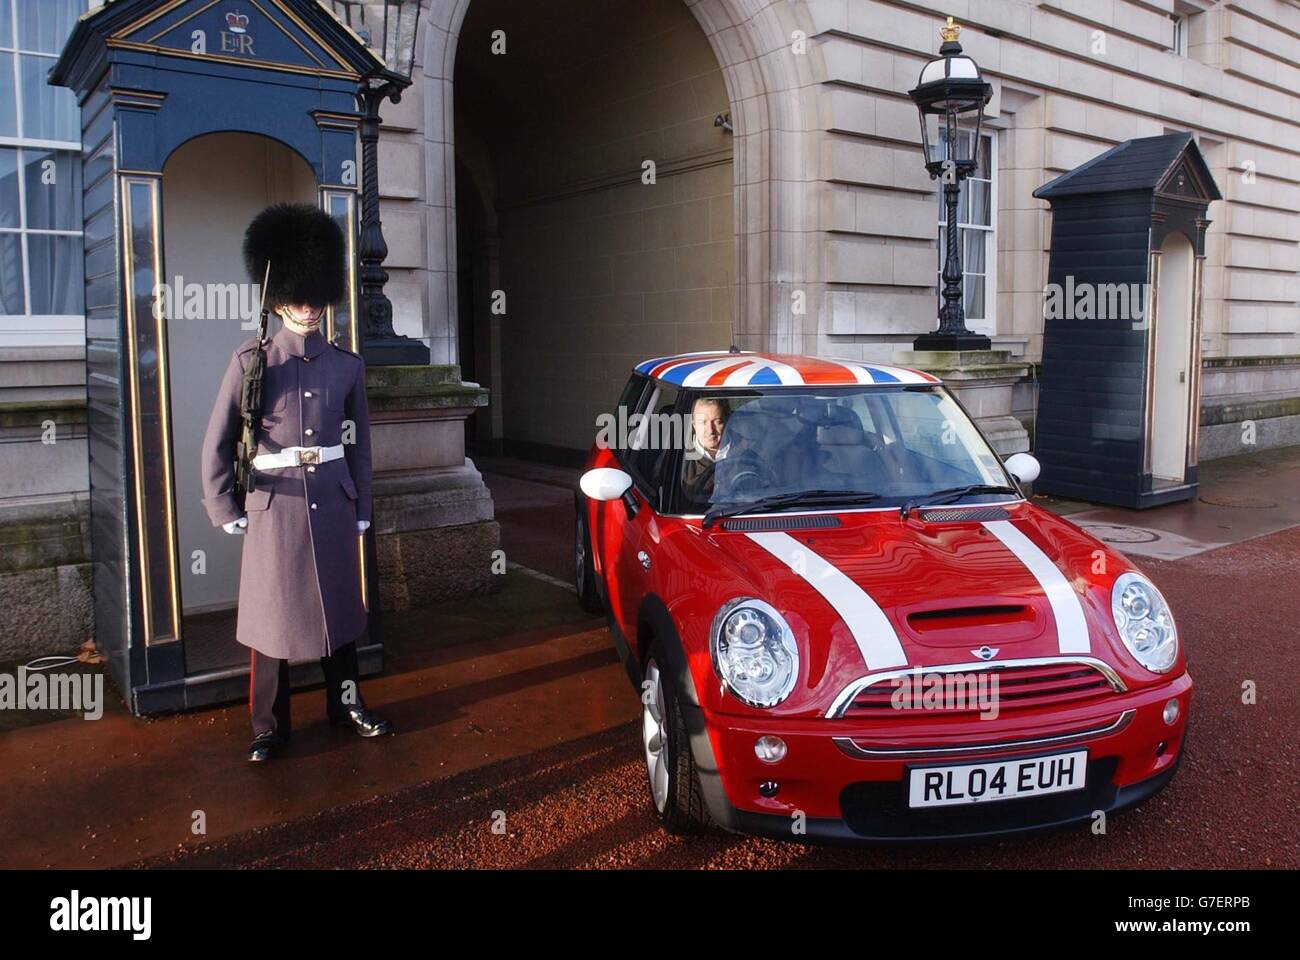 Ein Mini-Auto kommt am Buckingham Palace in London an, Hier wird es zusammen mit anderen Designklassikern wie einem Mini und dem Nose Cone von einer concorde im Viereck der offiziellen Residenz der Queen für eine Ausstellung britischer Exzellenz unter dem Titel "Avenue of Design" und wird von der Queen an diesem Abend ausgerichtet werden. Stockfoto